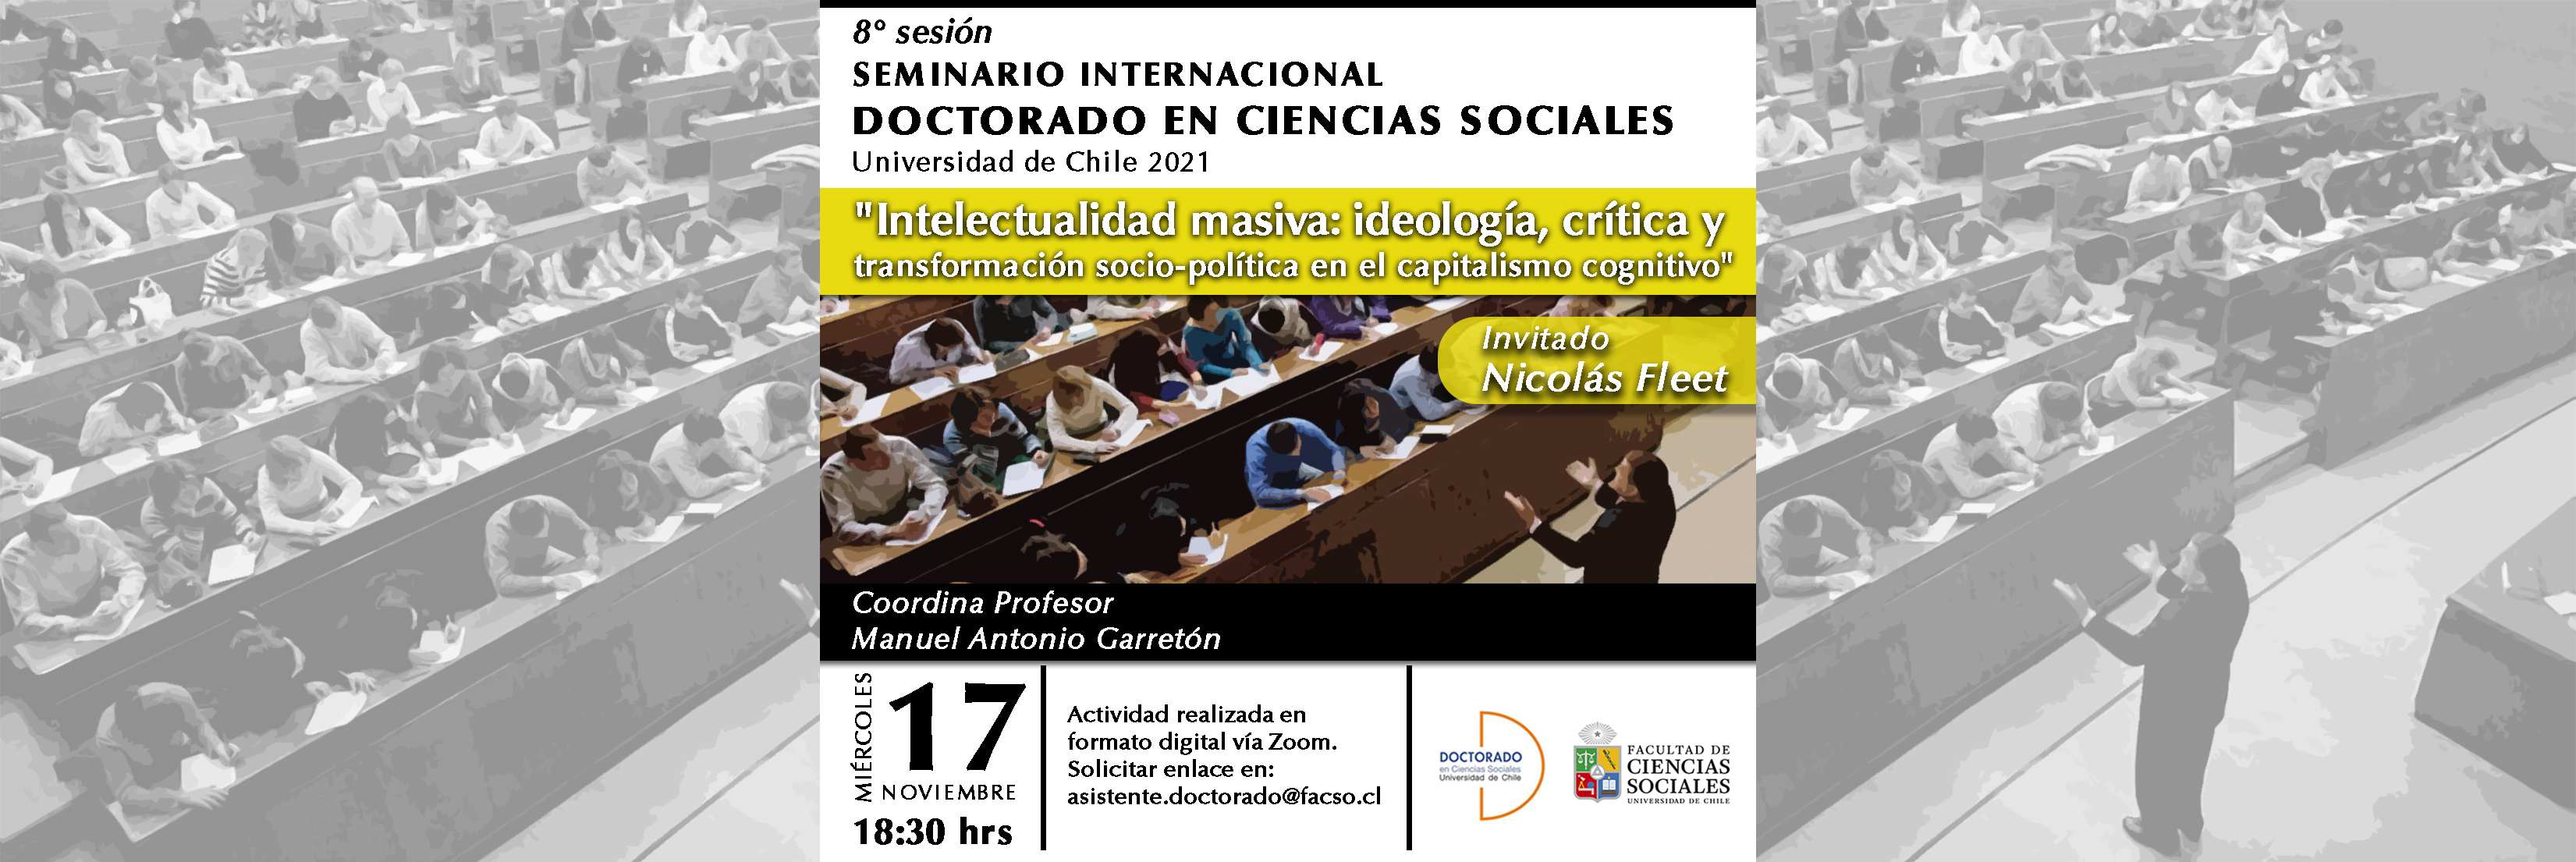 Octava sesión del seminario Internacional del Doctorado en Ciencias Sociales 2021